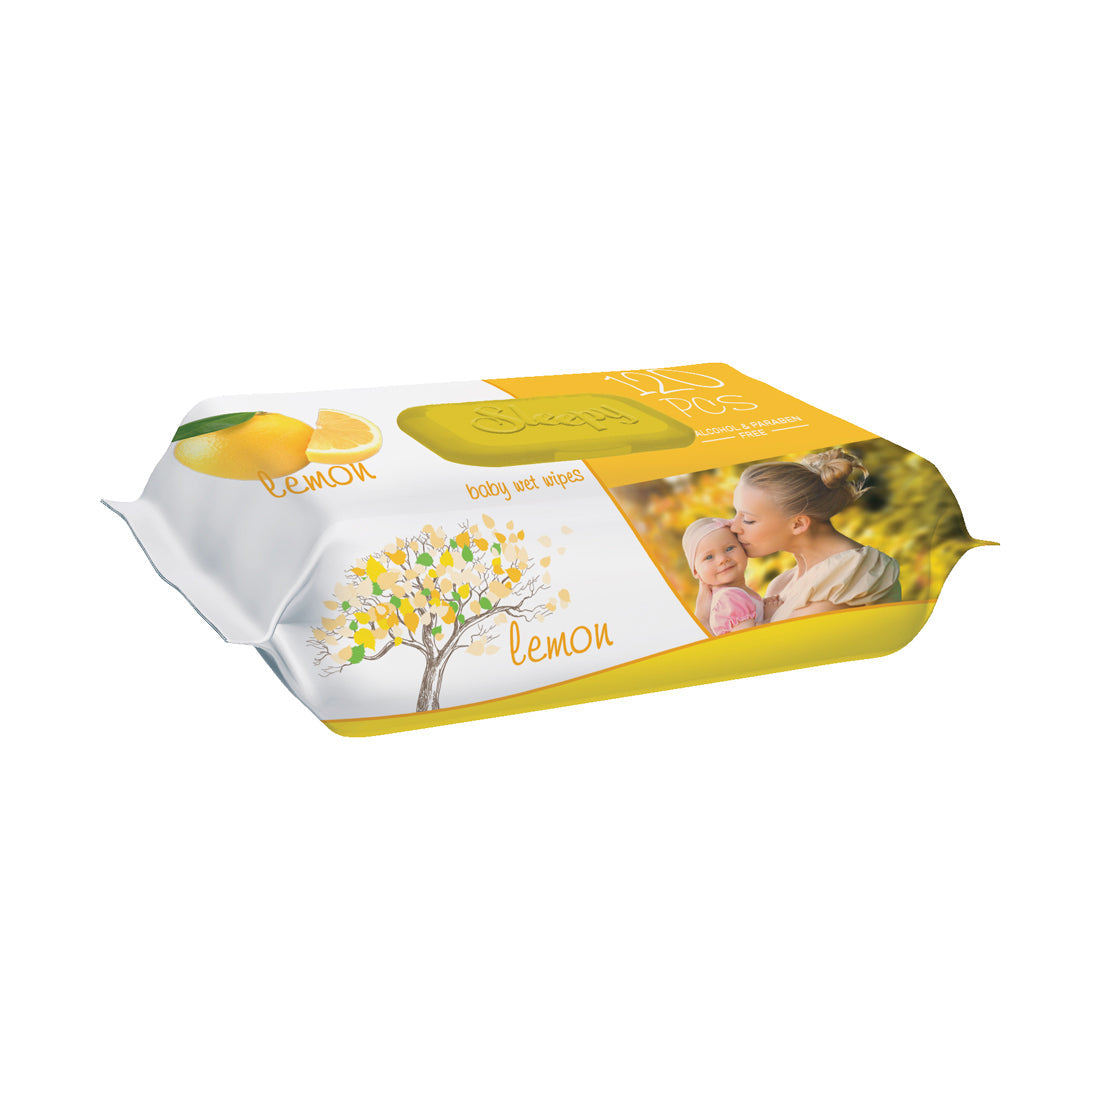 Șervețele umede pentru bebeluși, Sleepy Lemon, 120 bucăți, aromă de lămâie